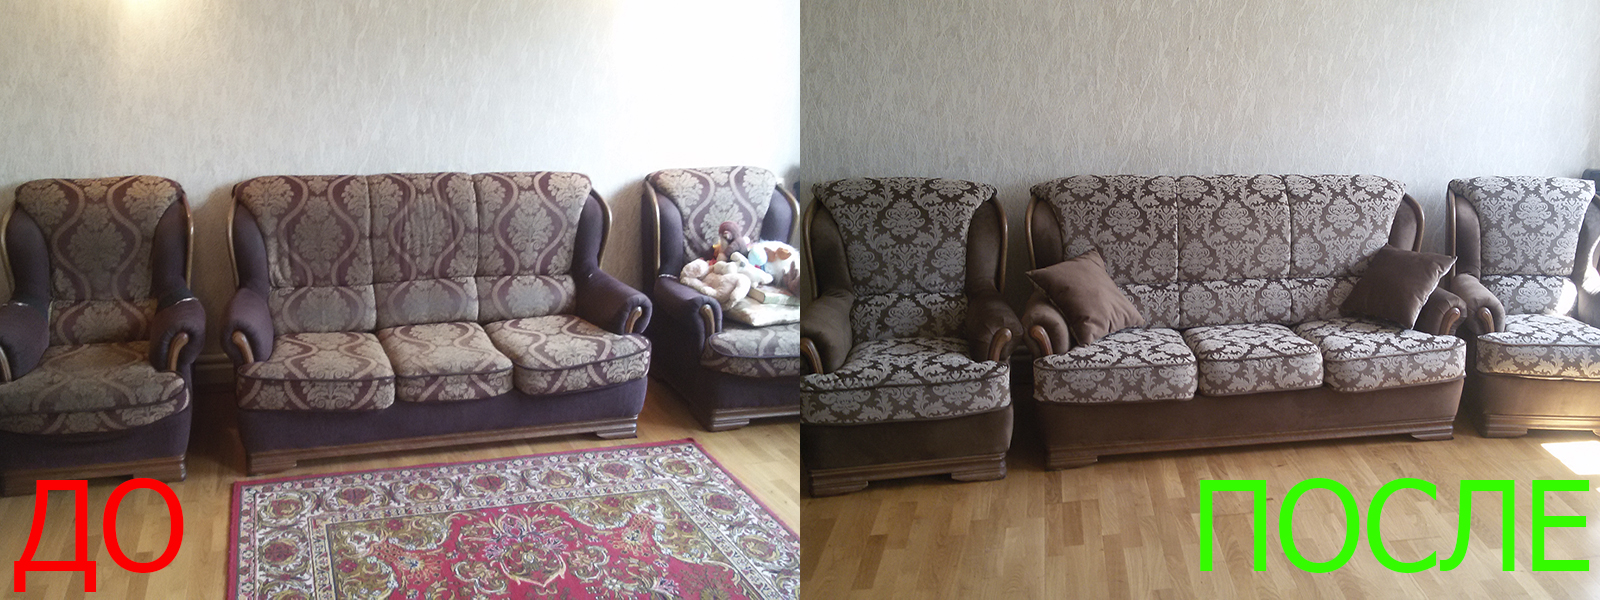 Перетяжка мягкой мебели в Казани - разумная стоимость, расчет по фото, высокое качество работы